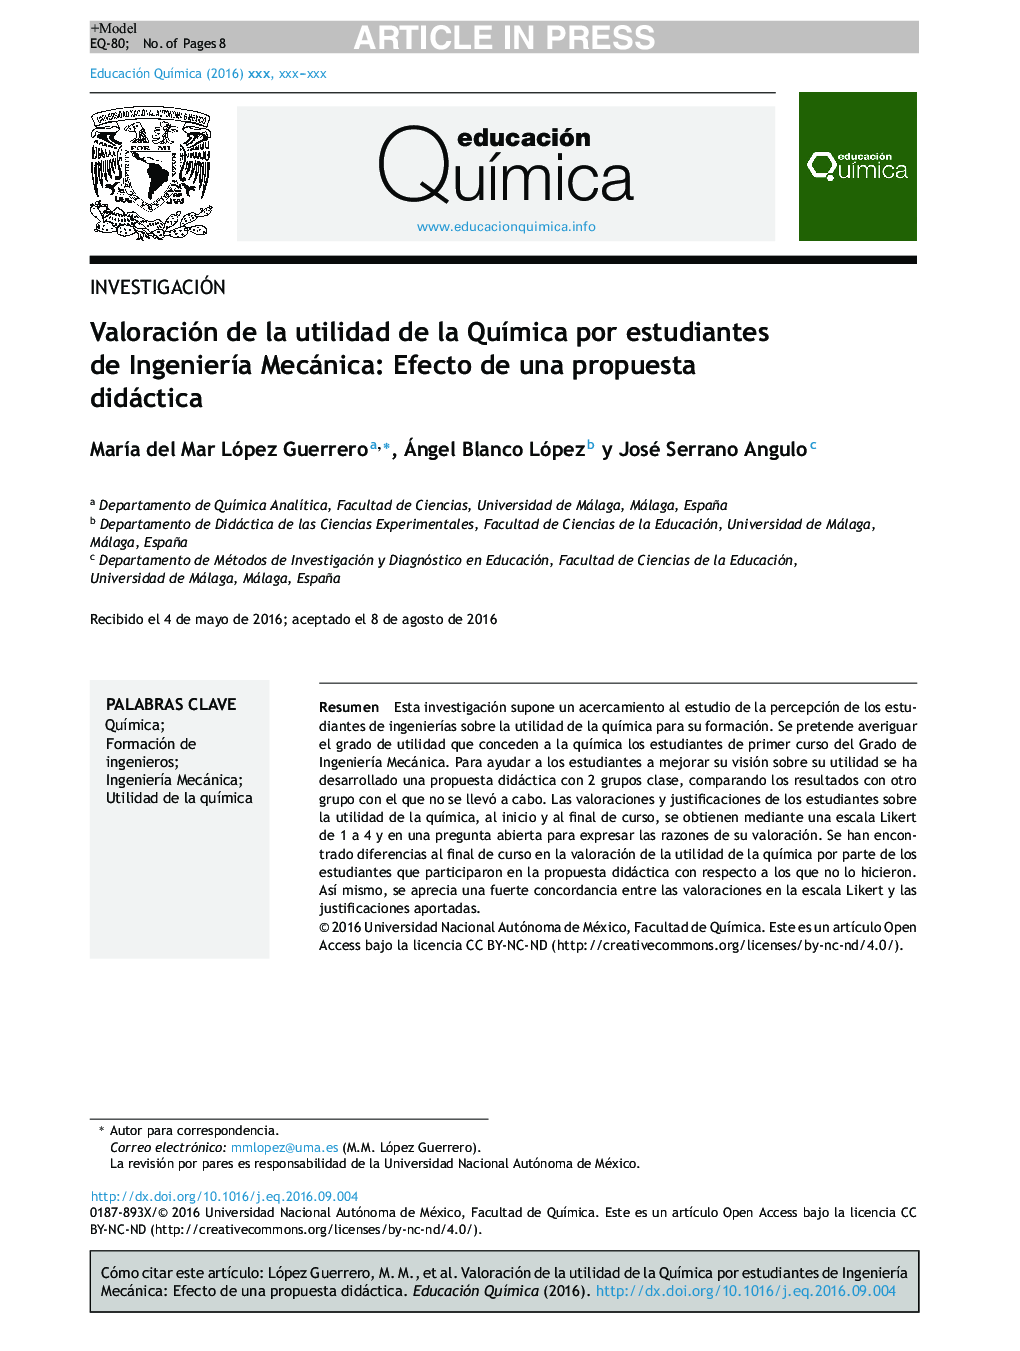 Valoración de la utilidad de la QuÃ­mica por estudiantes de IngenierÃ­a Mecánica: Efecto de una propuesta didáctica